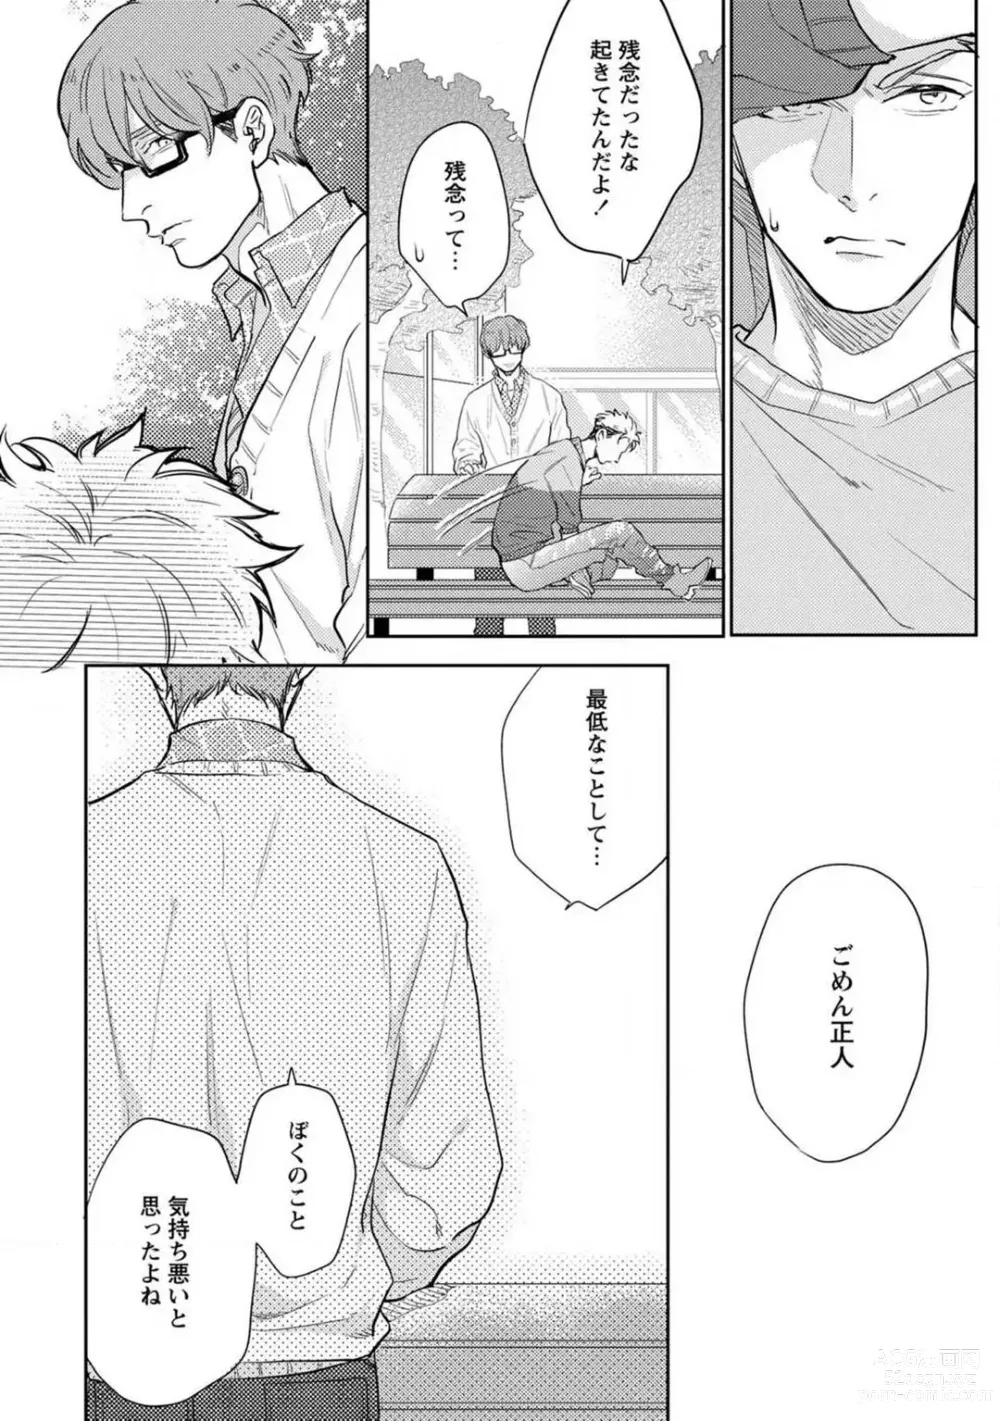 Page 41 of manga Kimi no Shiranai xx